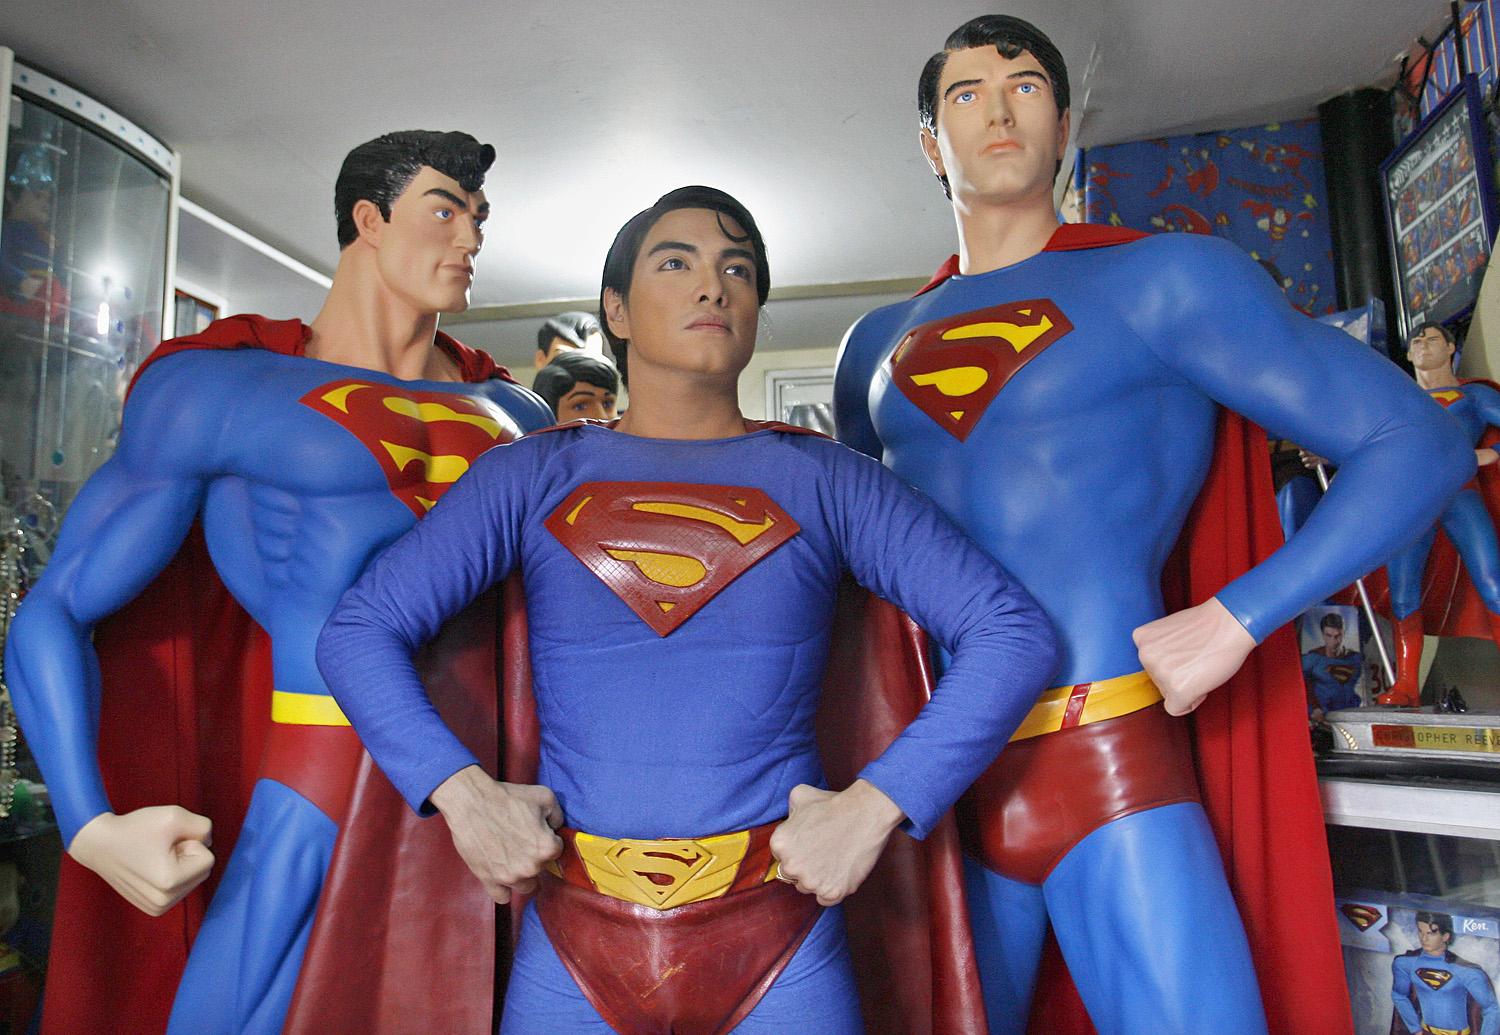 Herbert Chavez azzal szerzett tizenöt perc hírnevet, hogy Supermanné plasztikáztatta magát.